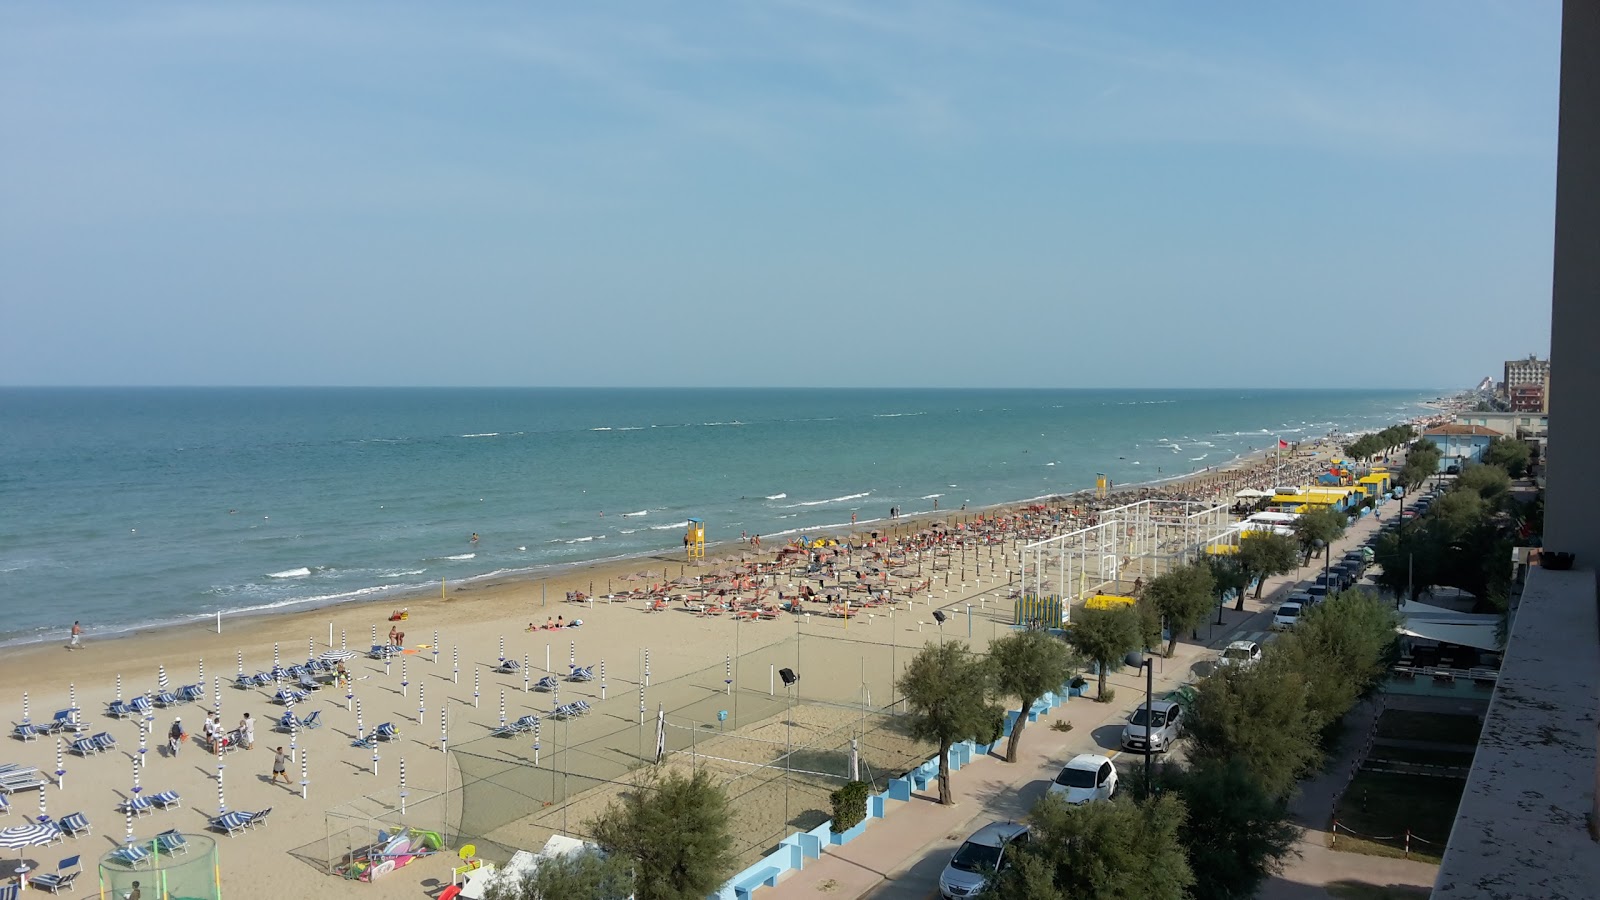 Fotografie cu Marotta beach zonă de stațiune de pe plajă